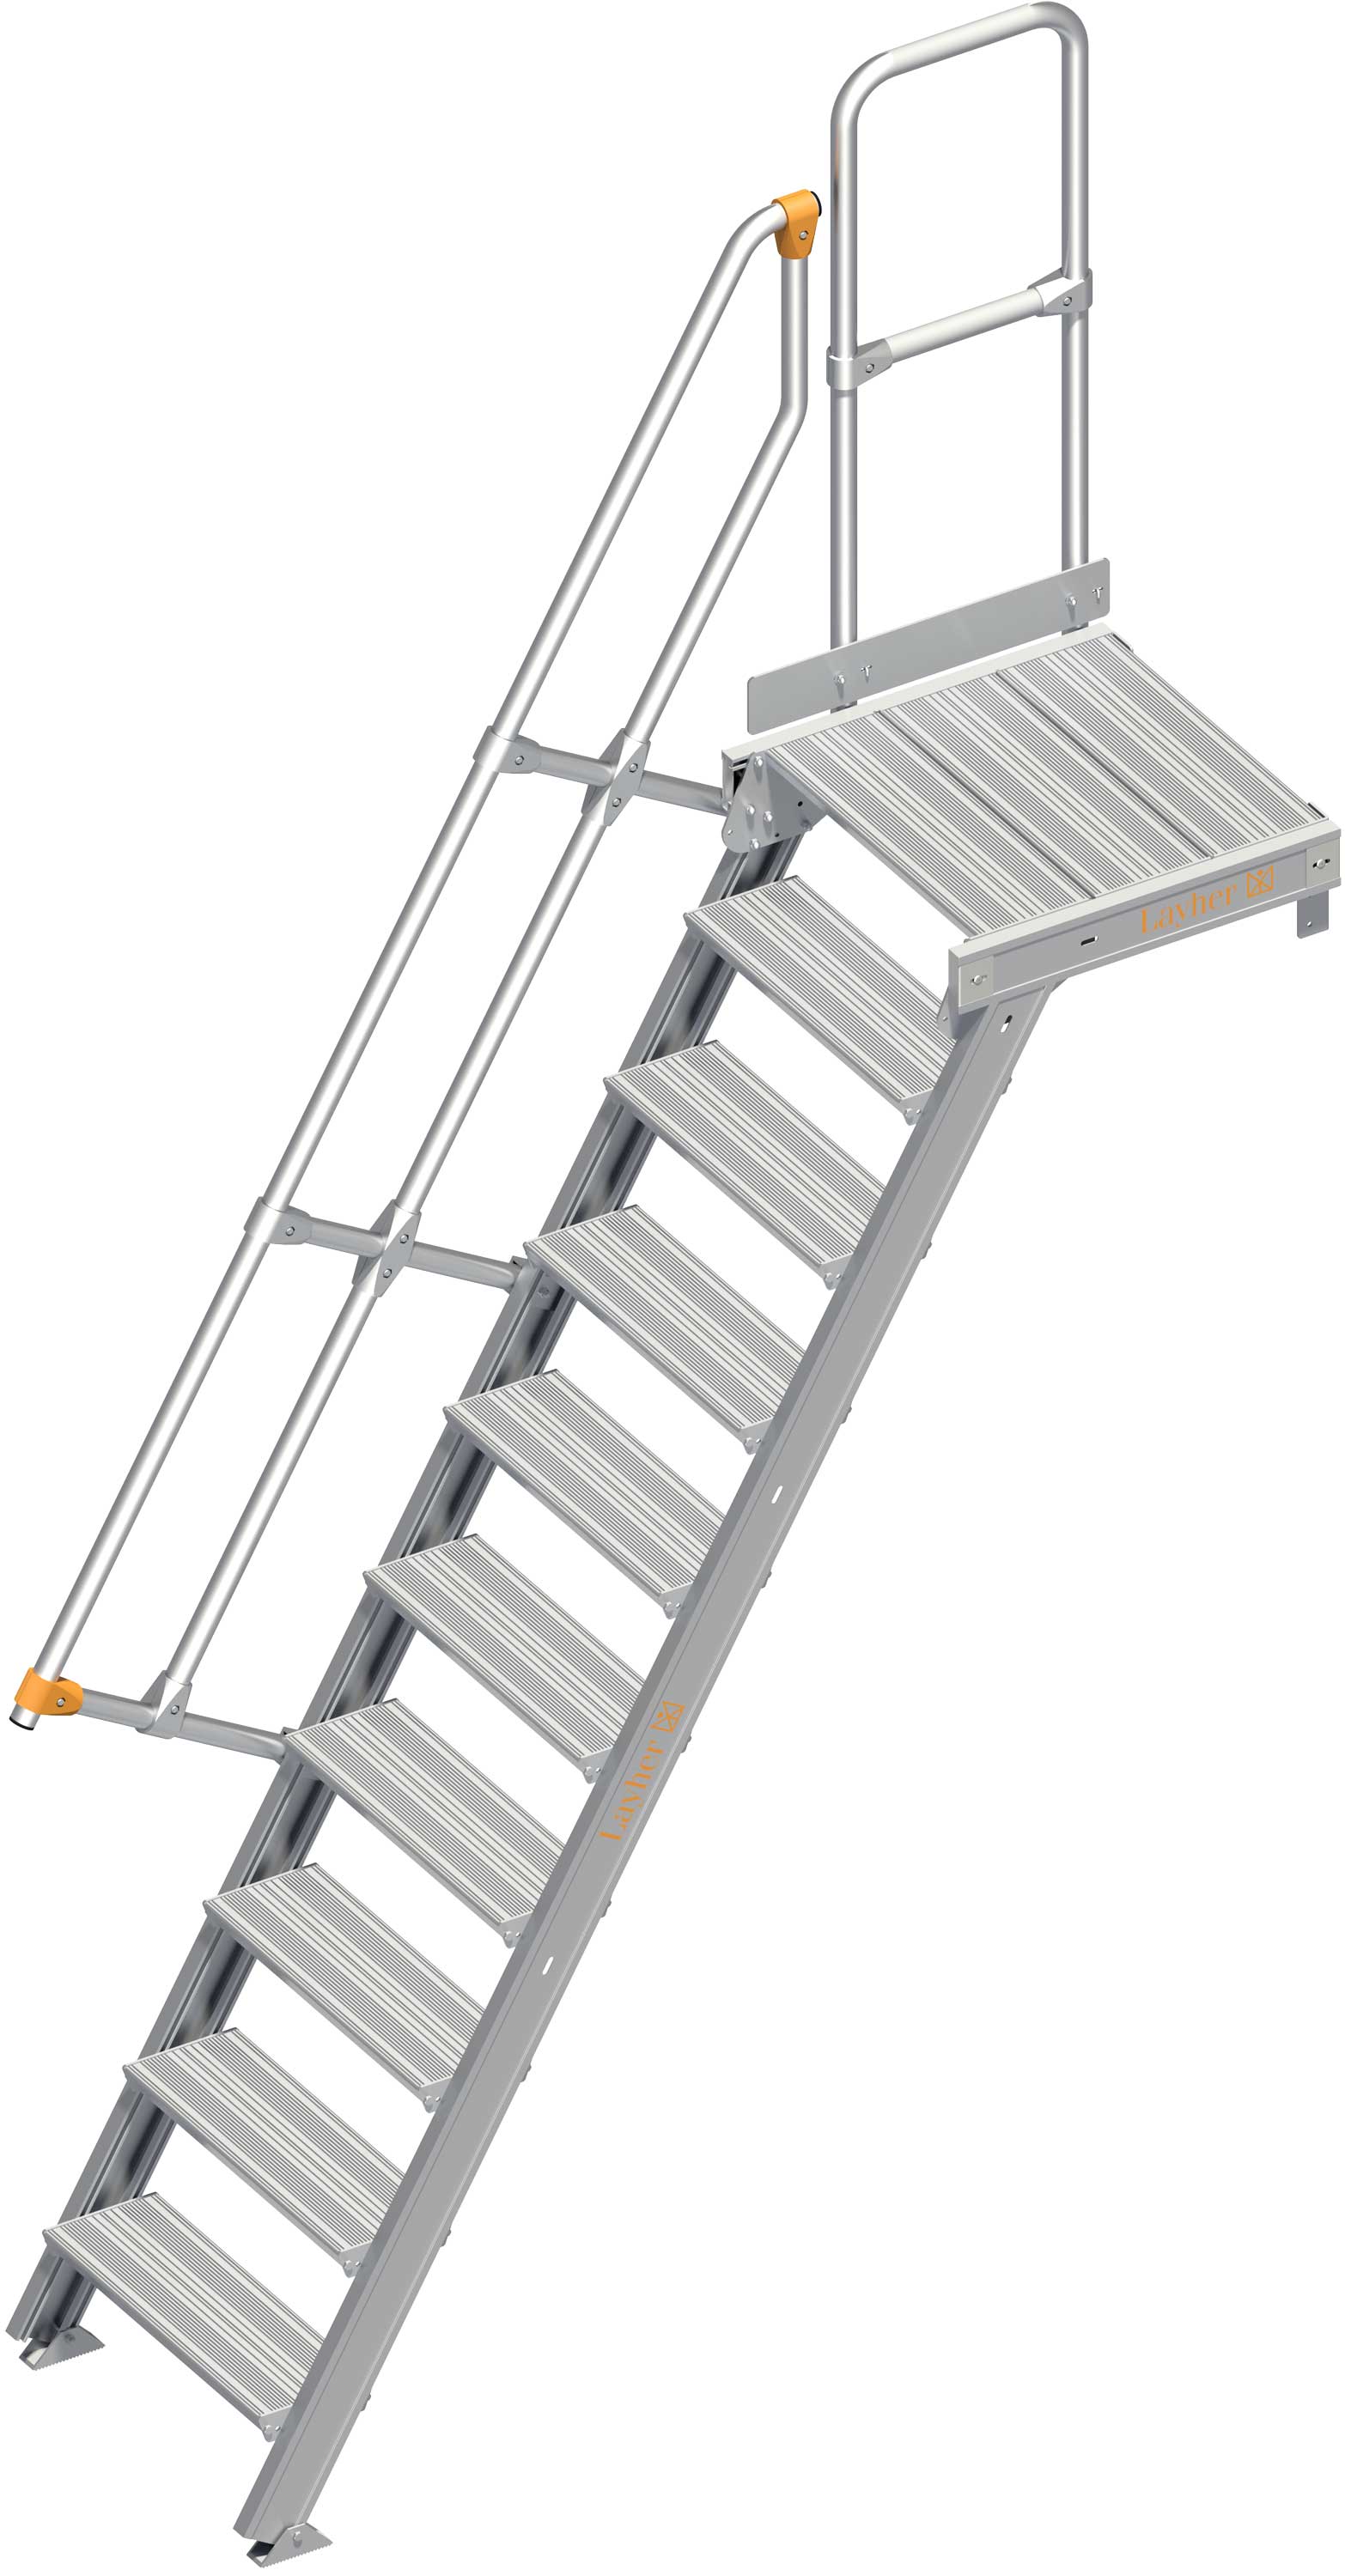 Layher Plattformtreppe 60° 10 Stufen - 600 mm breit